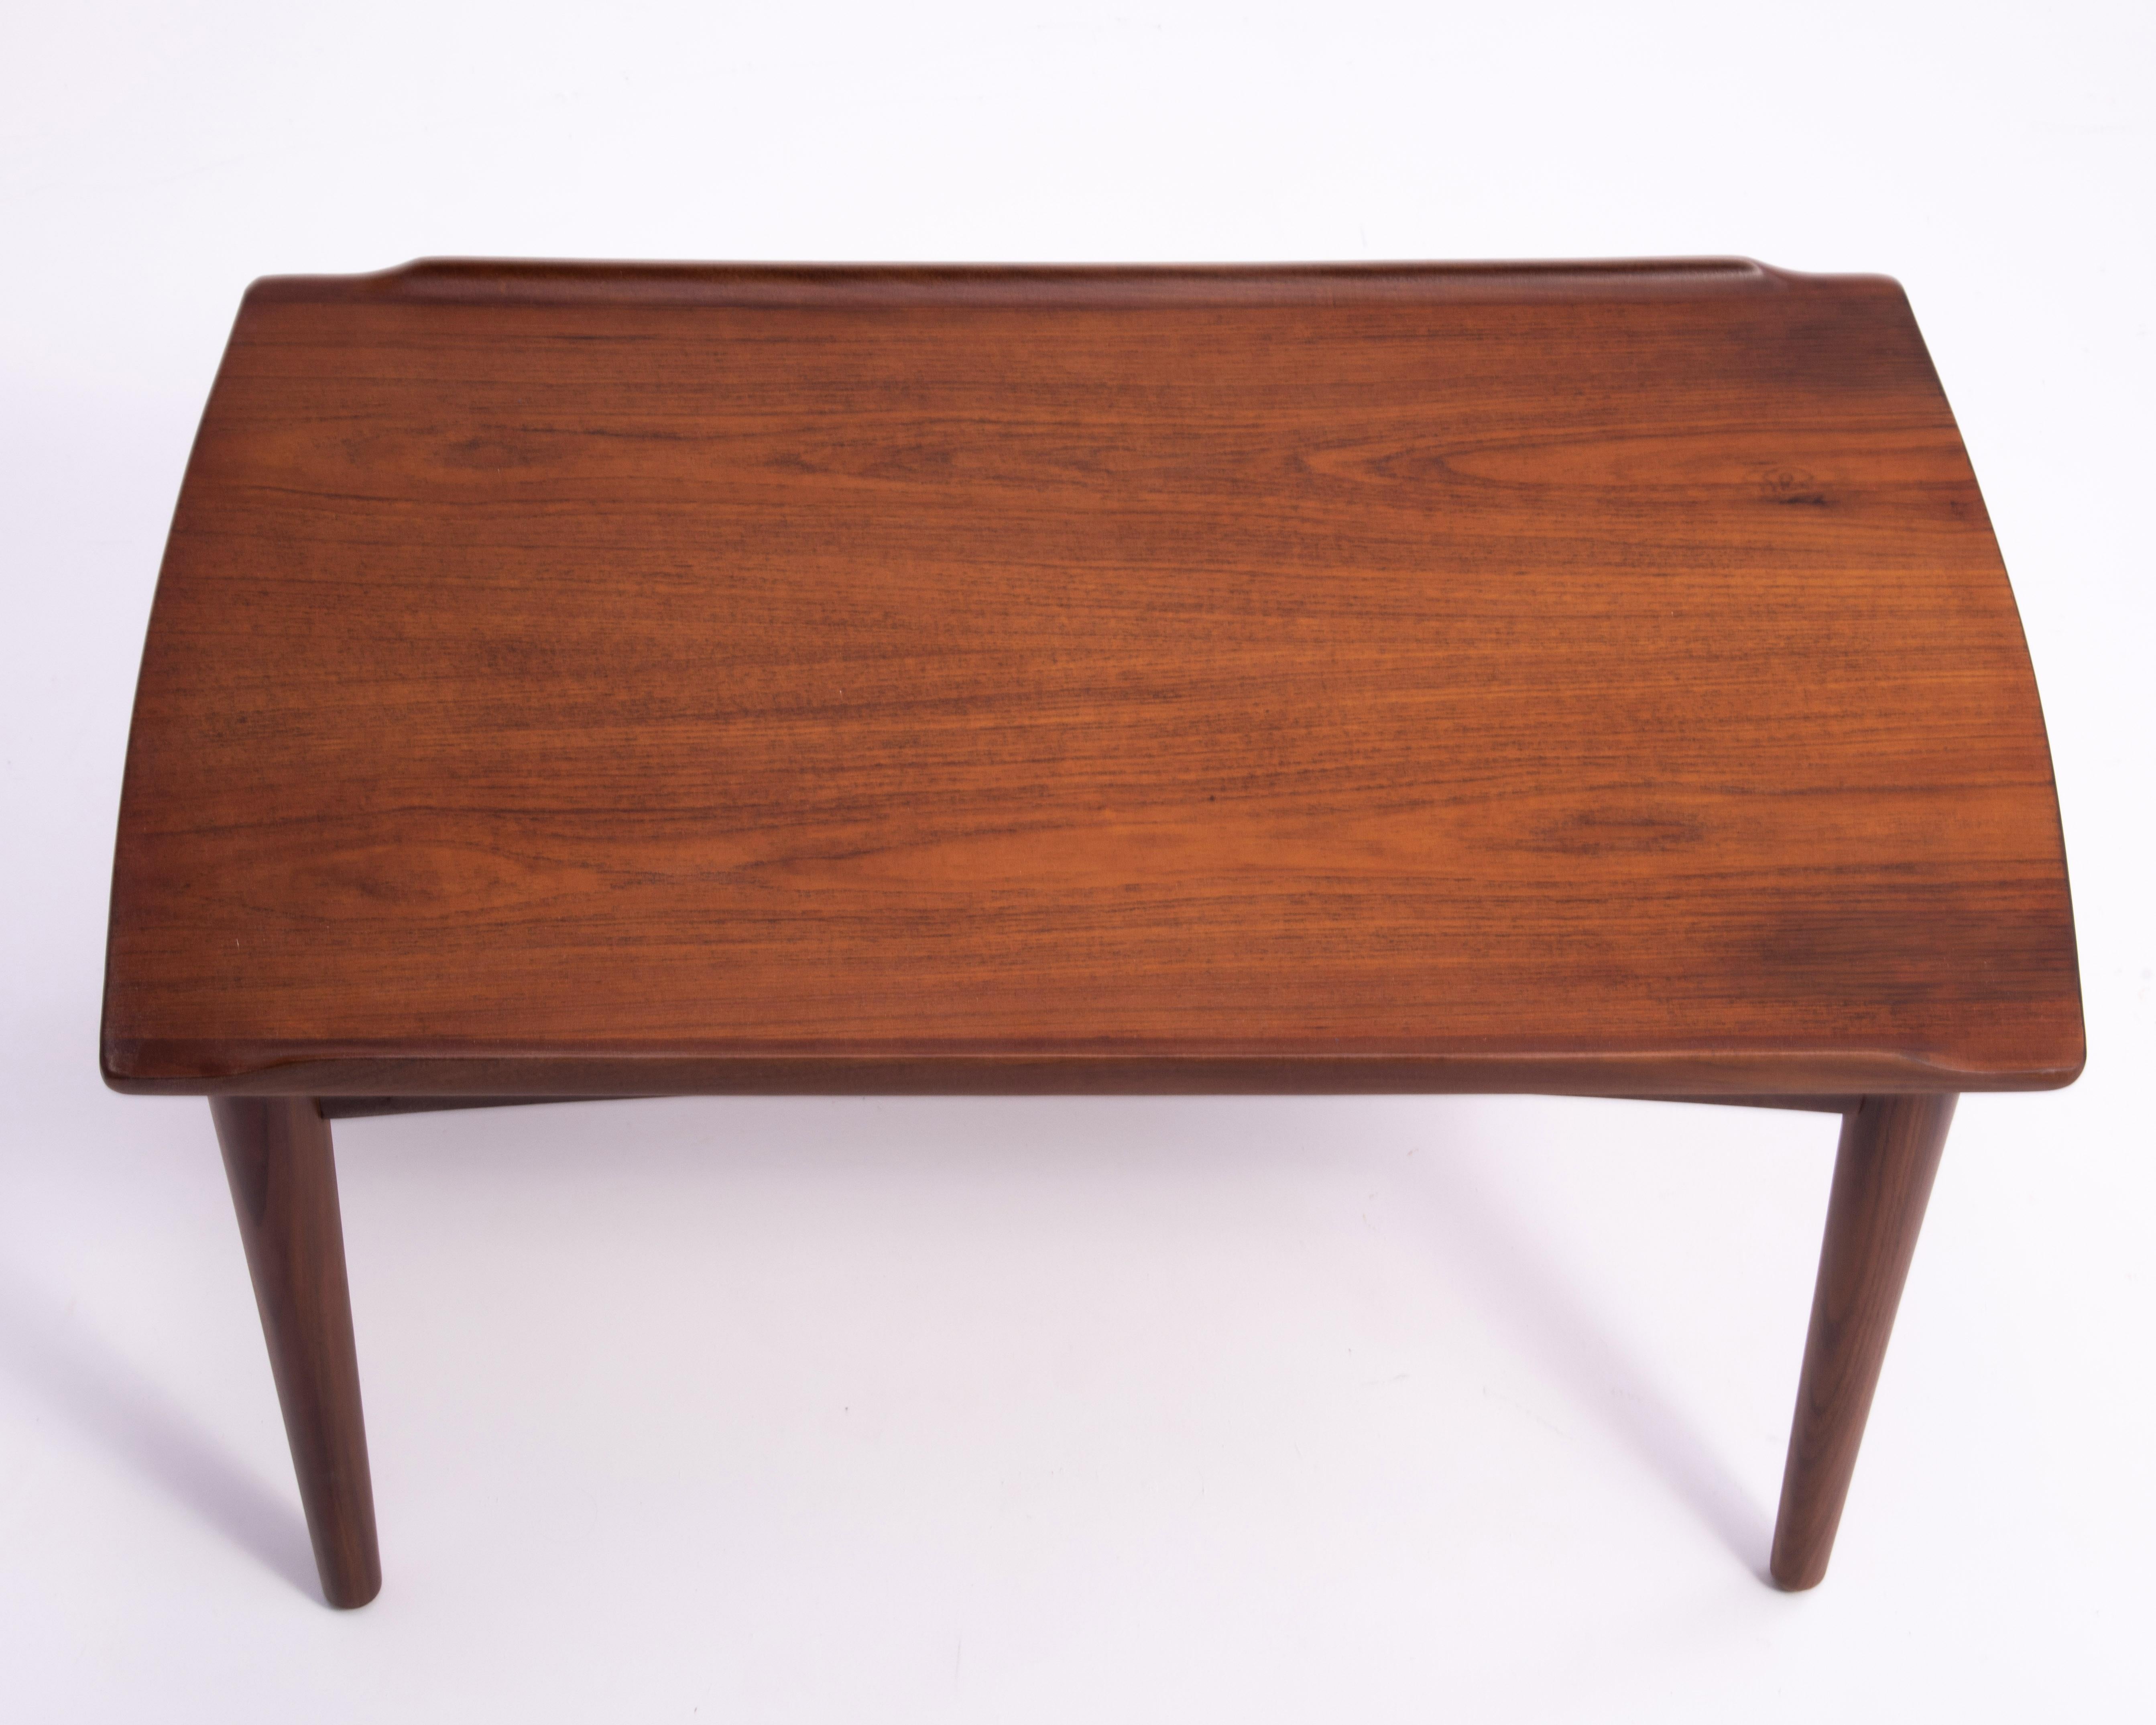 Danish Modern Teak Dowel Leg Side Table After Grete Jalk Marked B. J. 1970s For Sale 7